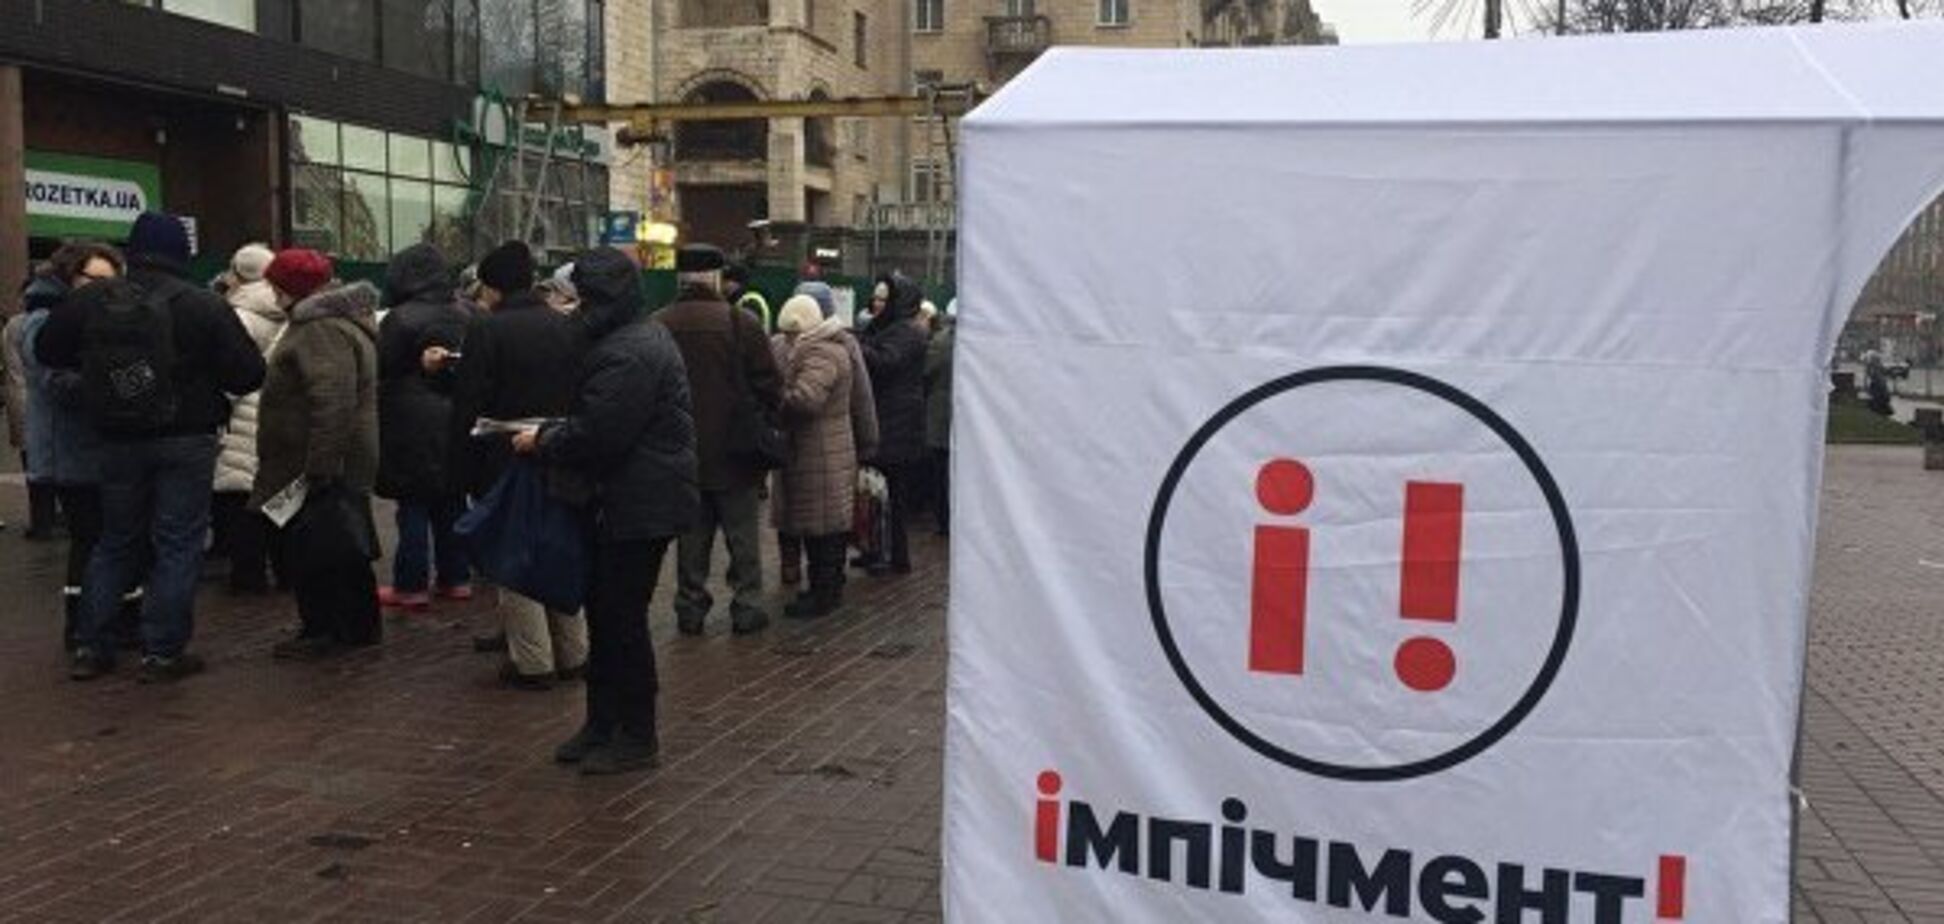 'Идиотизм зрадое*ов': активисты 'Михомайдана' опозорились, готовясь к массовым протестам